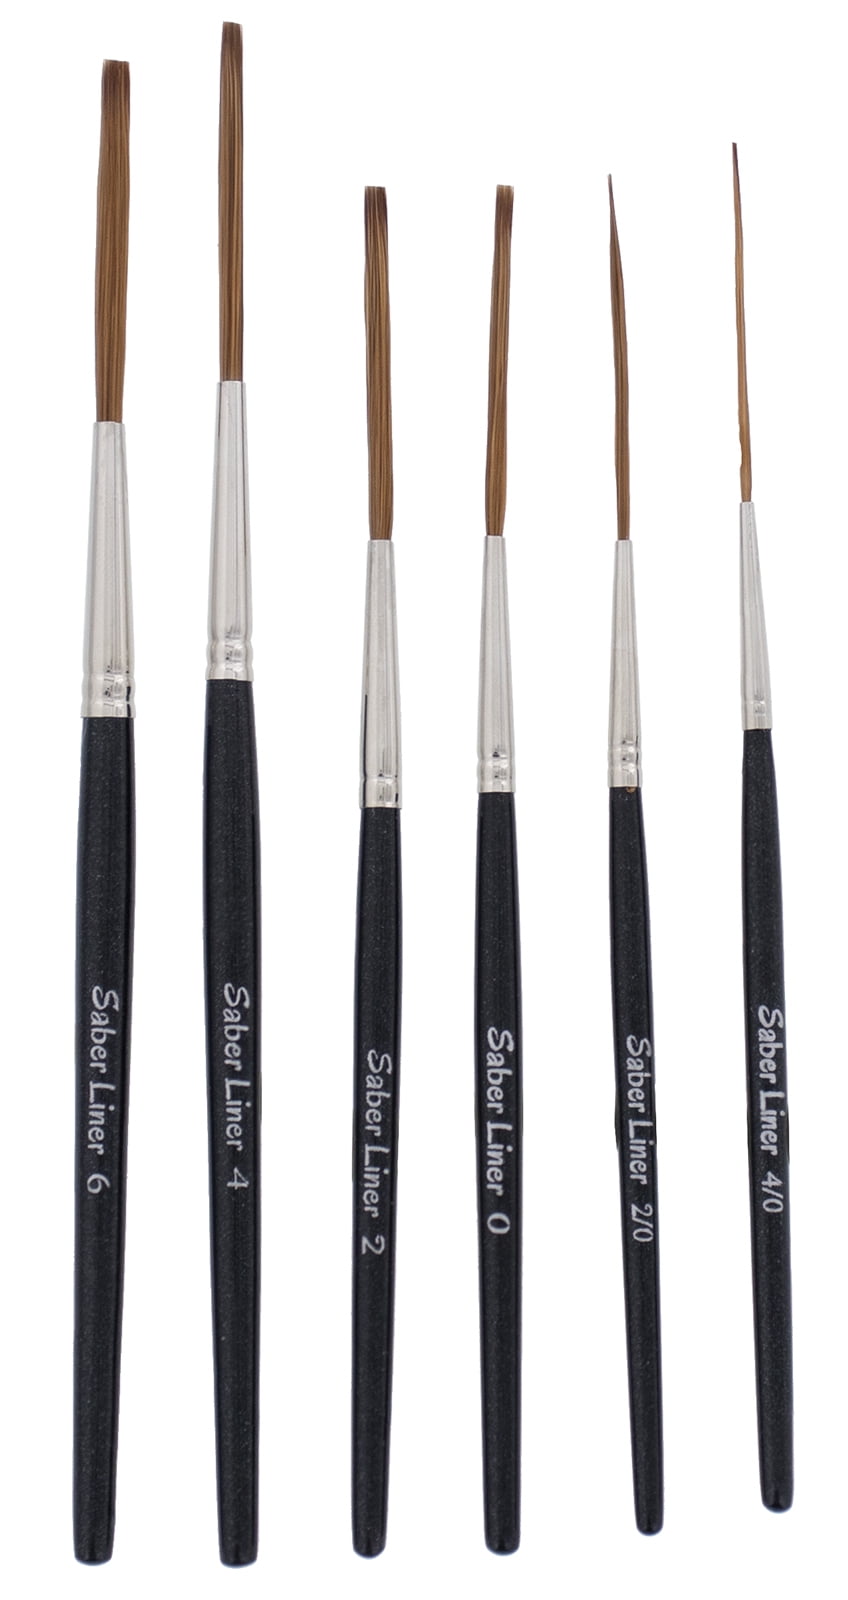 Set 6 Mack Sword Striping Series 10 Size 000 - 3 Pinstripe Brush